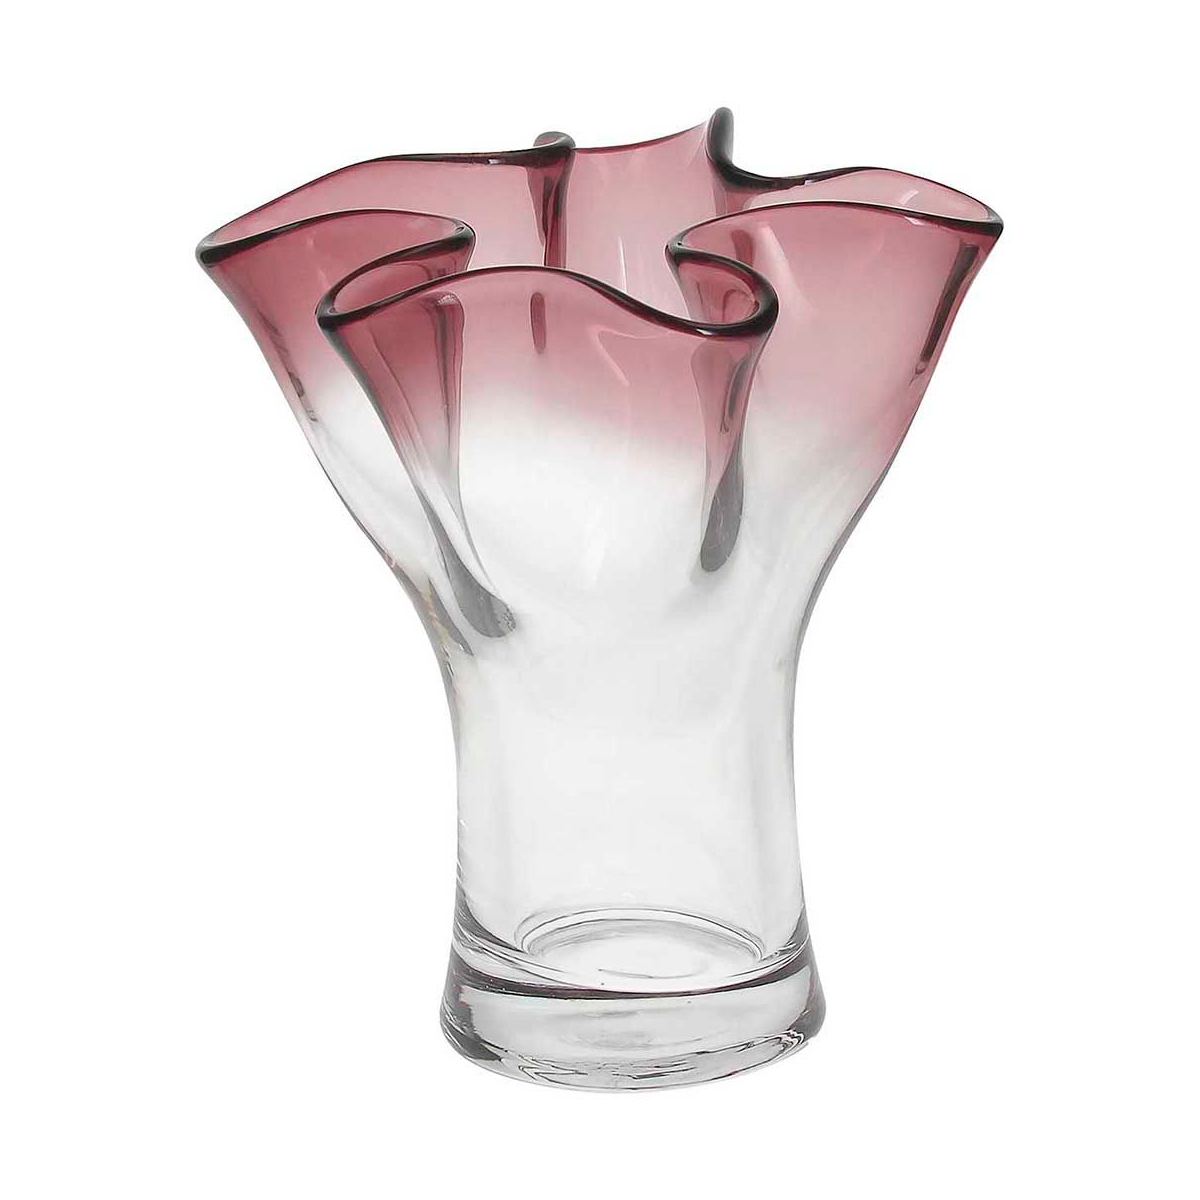 Ваза Andrea Fontebasso Glass Design Bizarre 27см, цвет бордовый часы песочные andrea fontebasso glass design time 24см